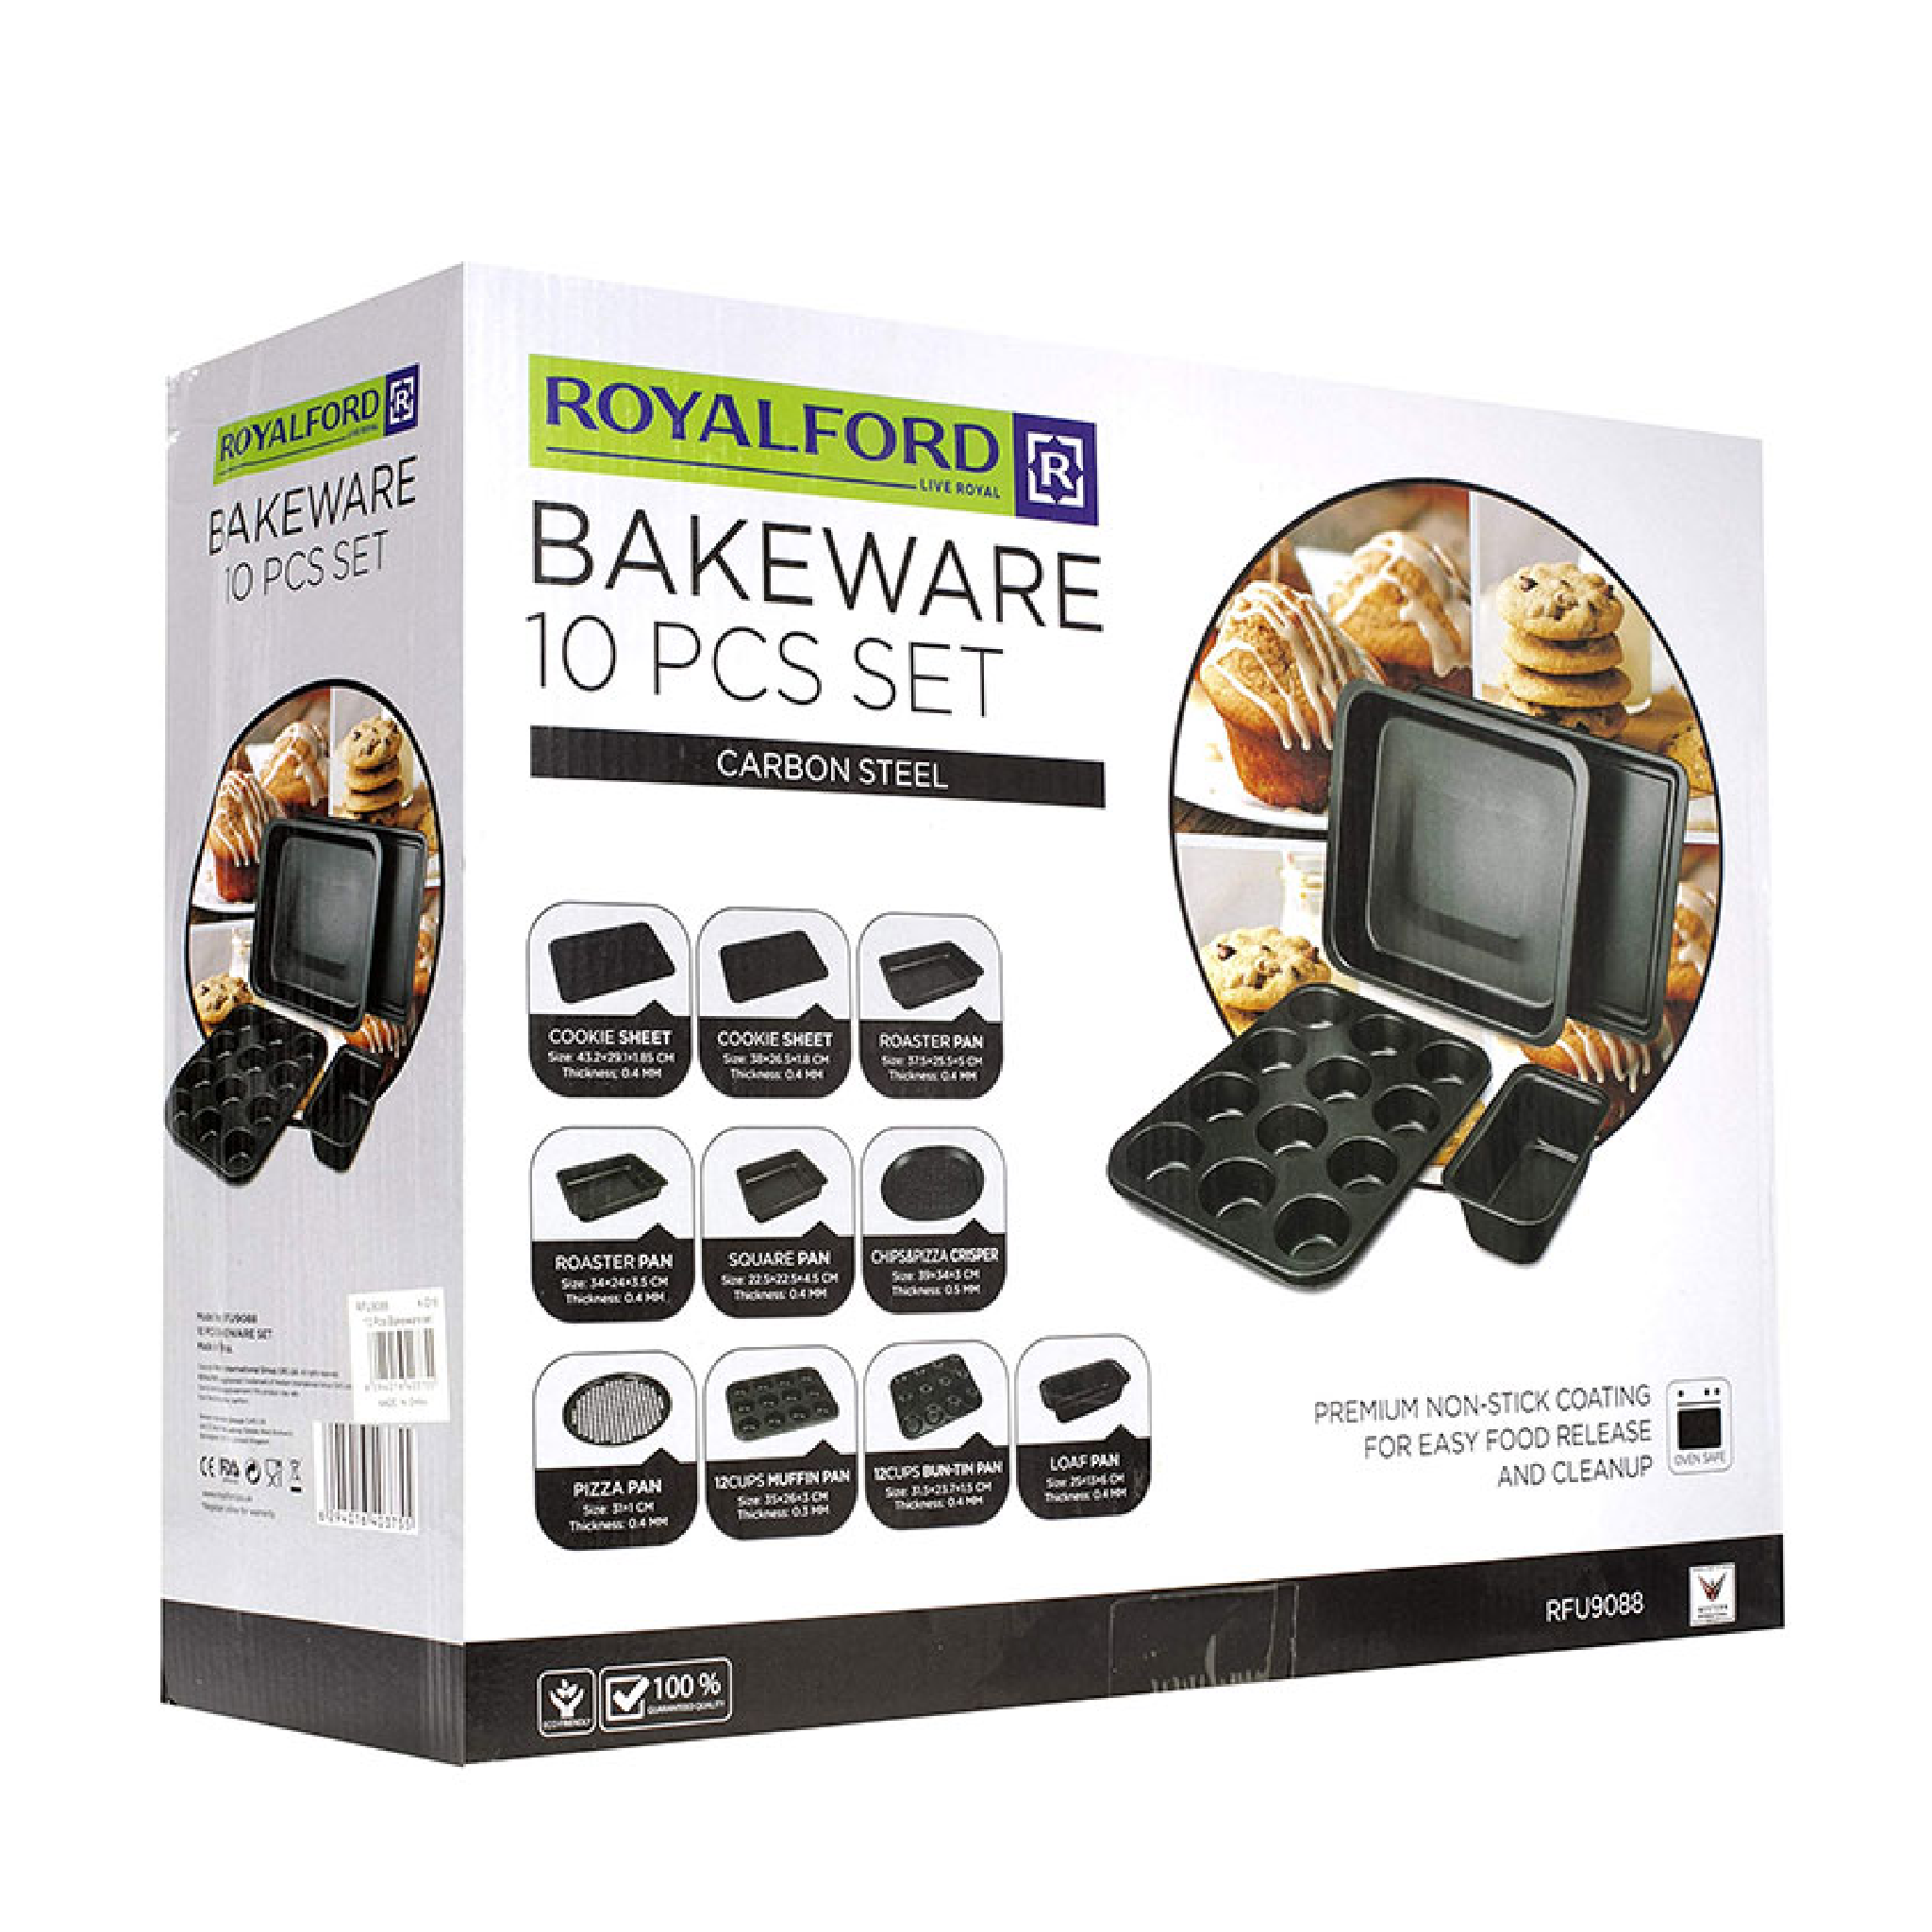 Royalford RFU9088 10 Pieces Bakeware Set